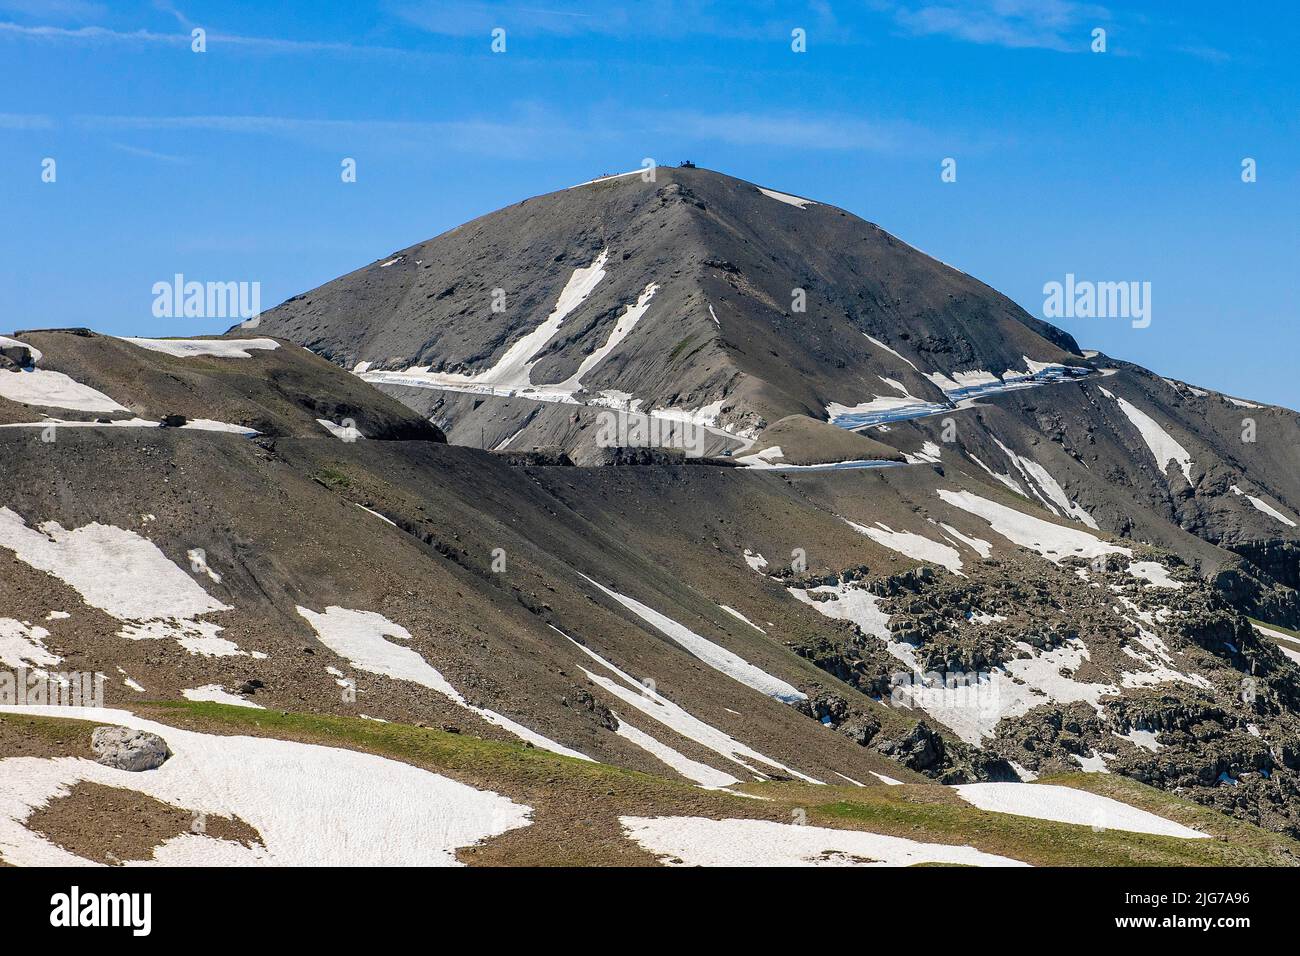 Vista sulla cima della montagna Cime de la Bonette con una piccola piattaforma di osservazione, al centro il passo della montagna col de la Bonette, Route de la Foto Stock